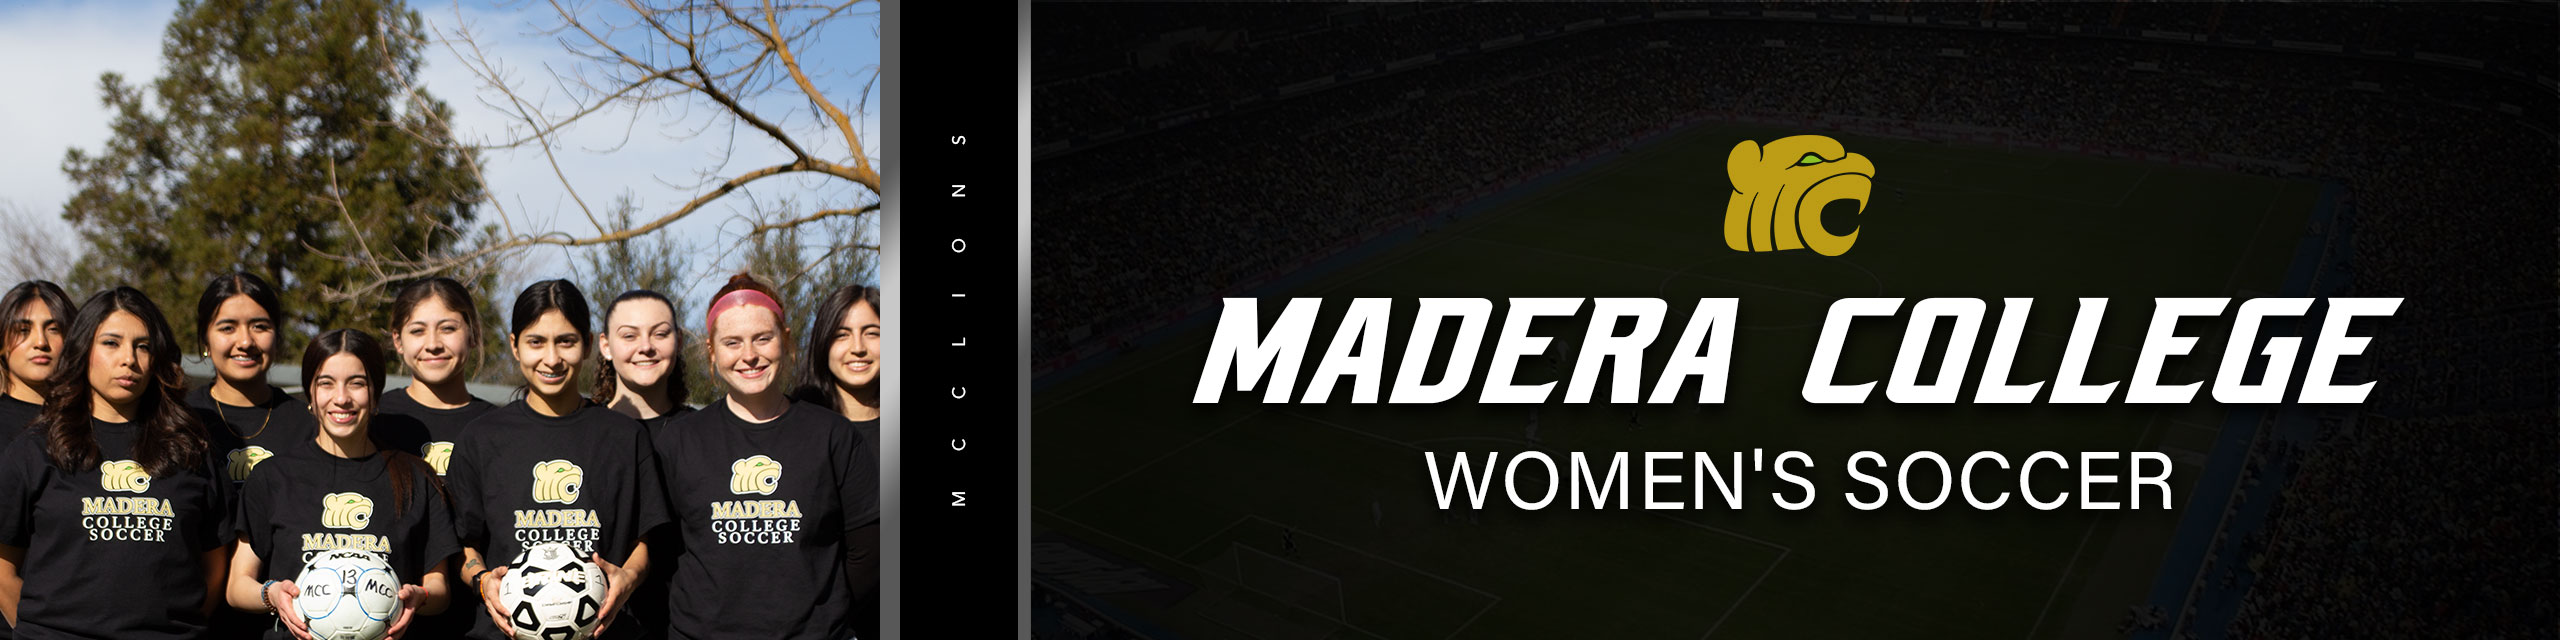 women-Soccer team banner